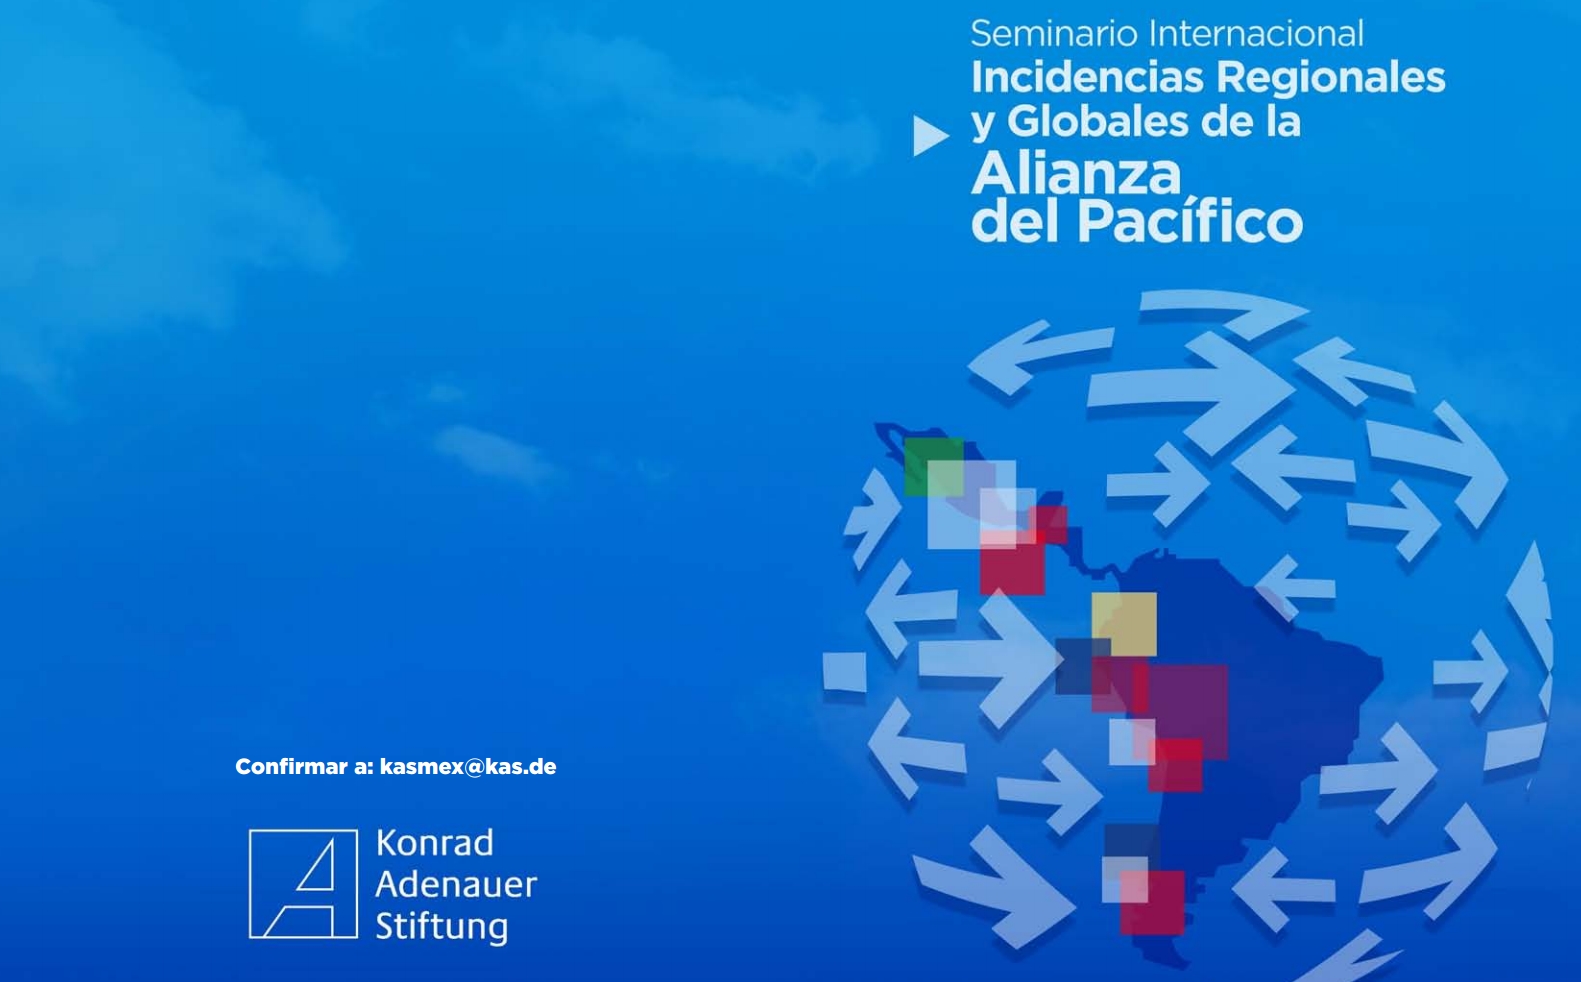 13 y 14 de octubre 2014 – Dr. Andrés Serbin en el Seminario Internacional Incidencias Regionales y Globales de la Alianza del Pacífico